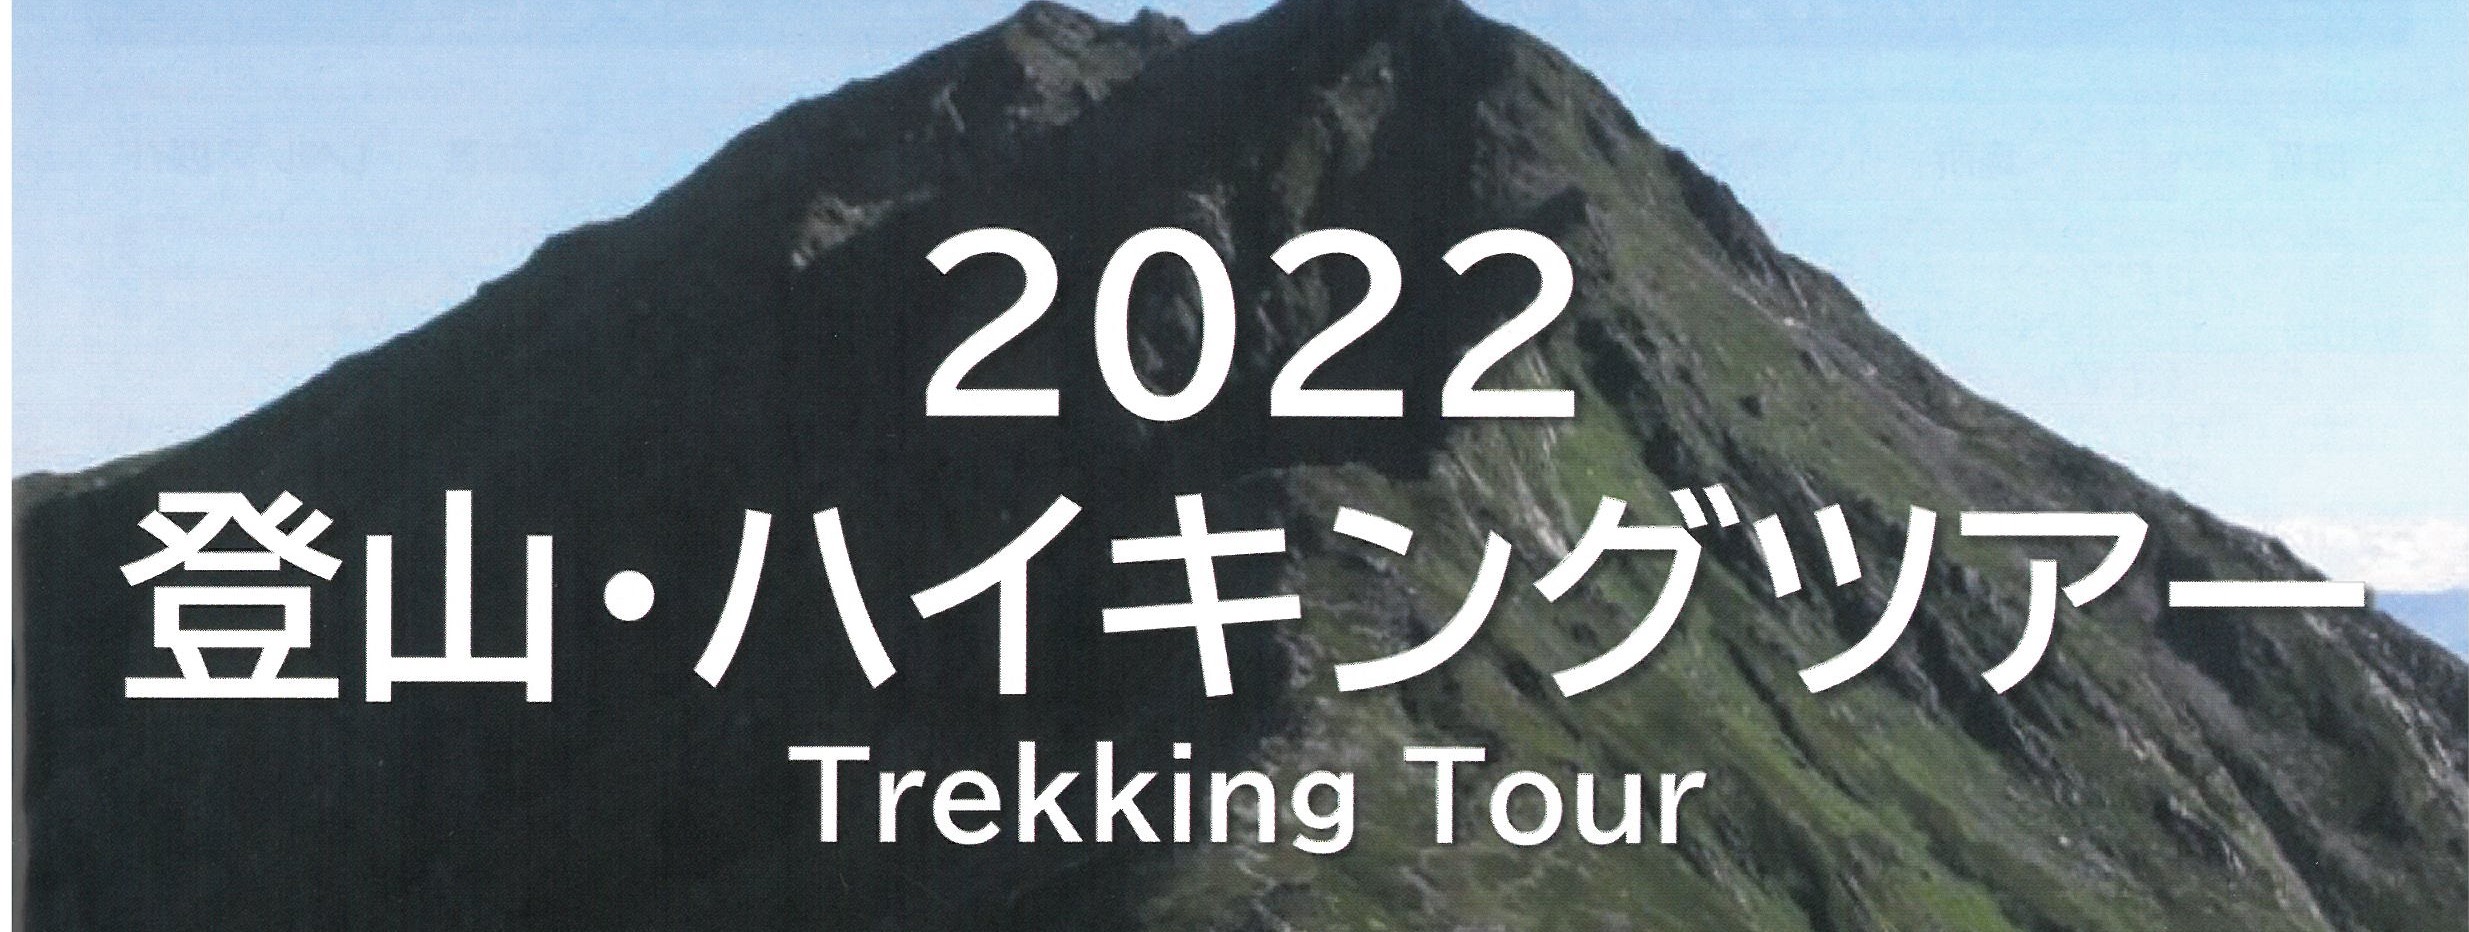 「2022 登山・ハイキングツアー」のご案内